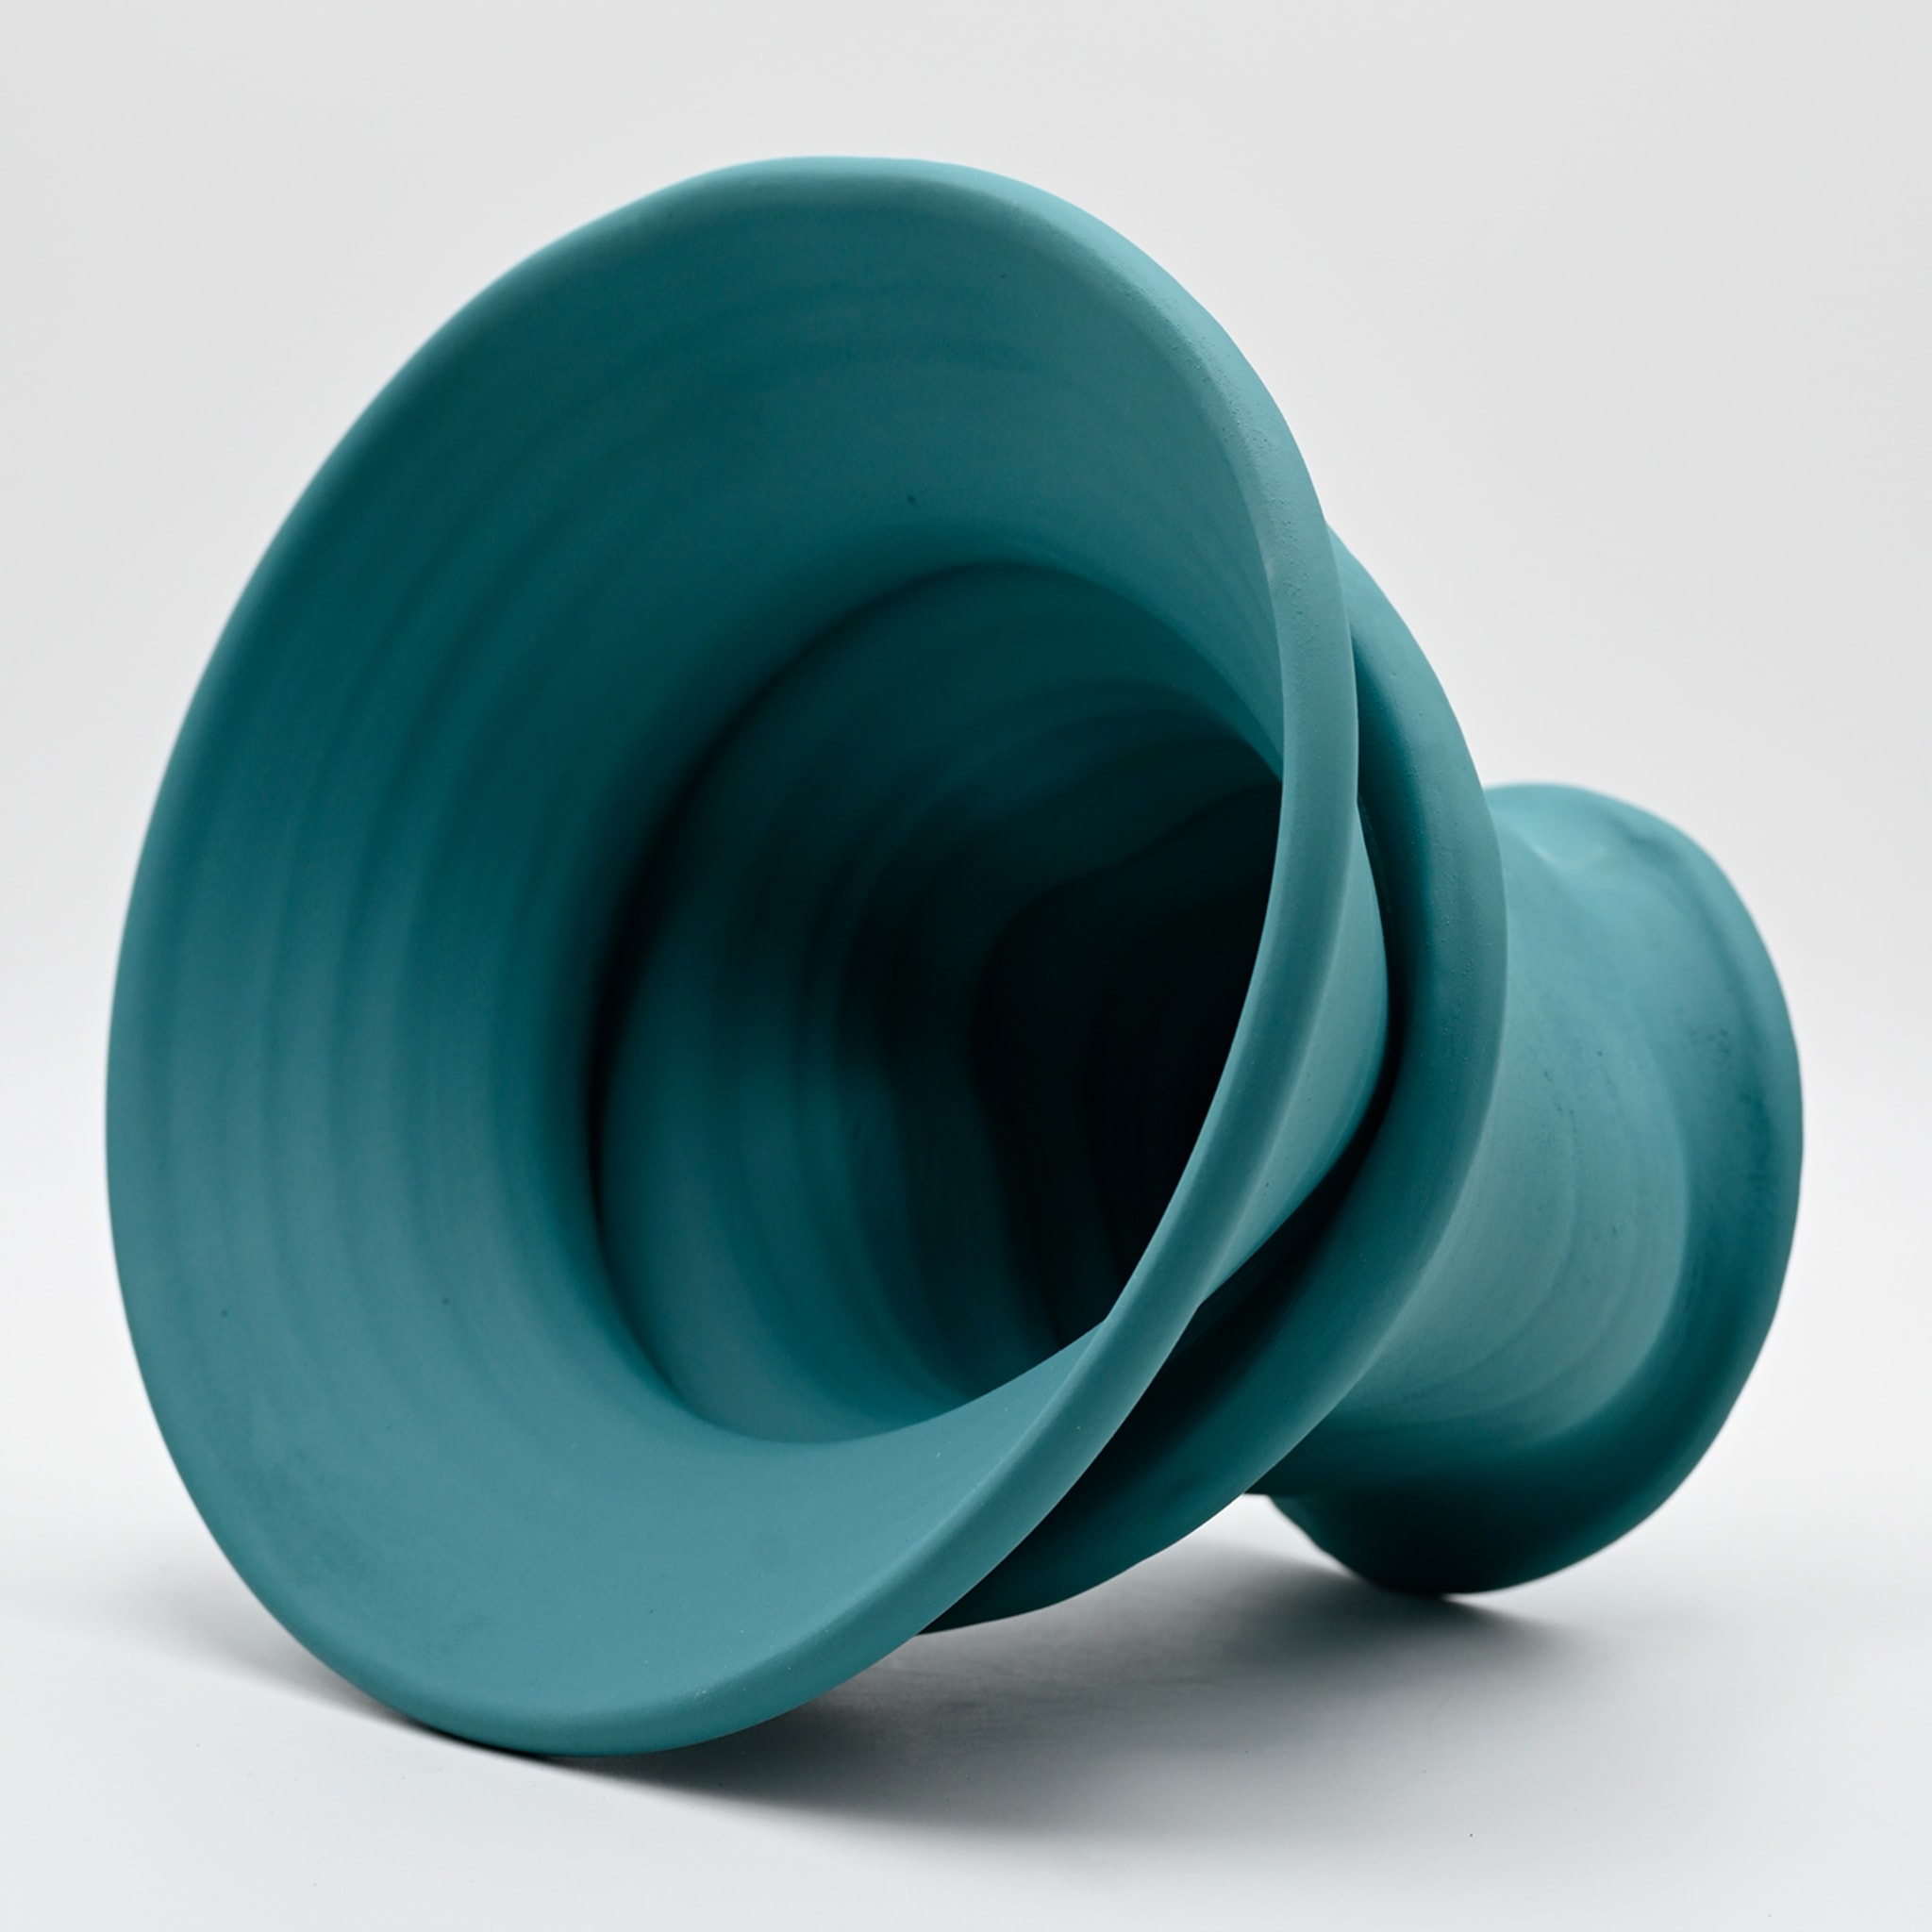 Turquoise Vase #2 - Alternative view 1